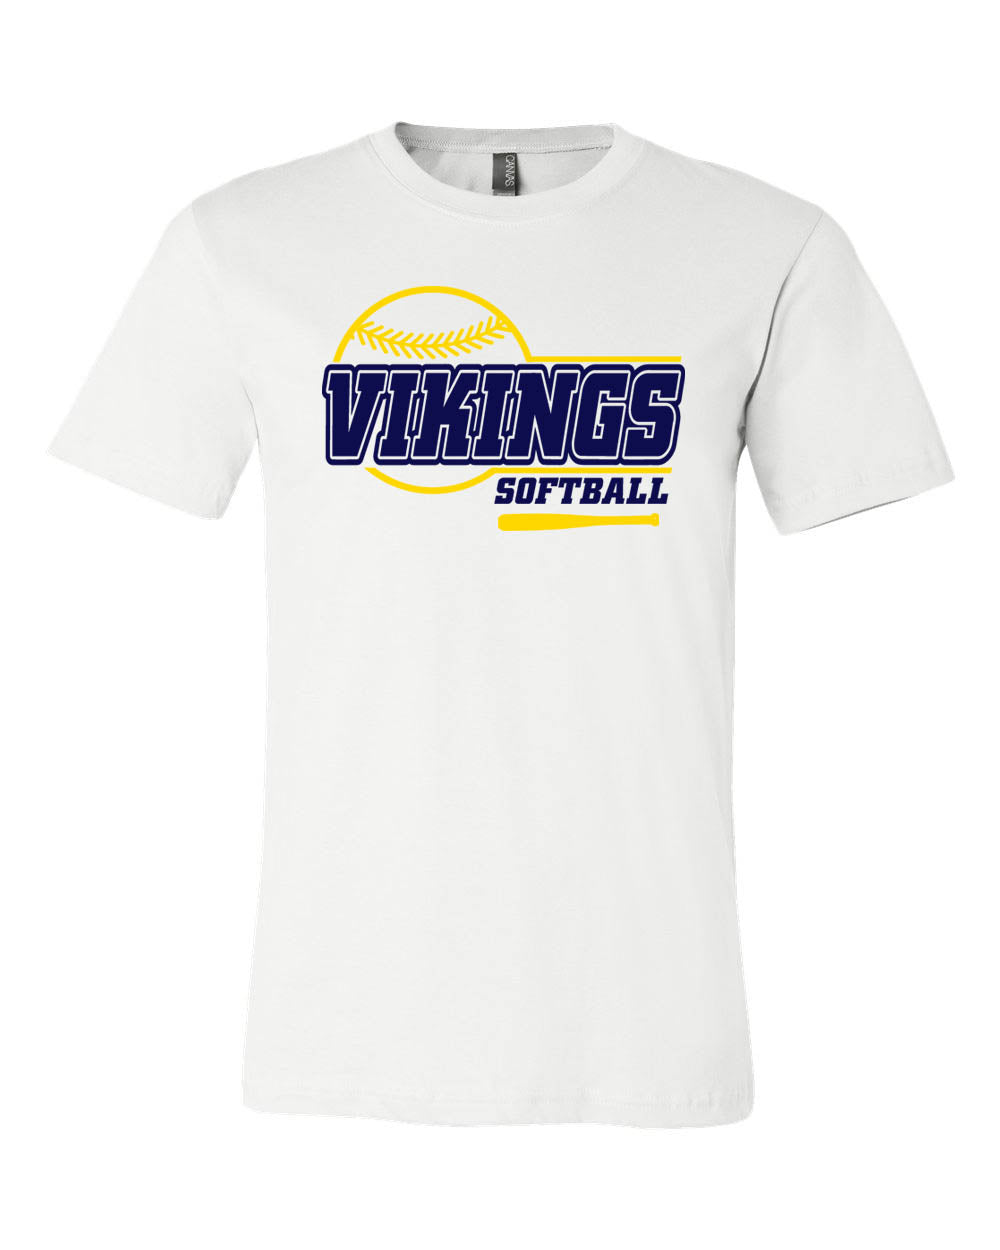 Vernon Vikings Softball t-Shirt